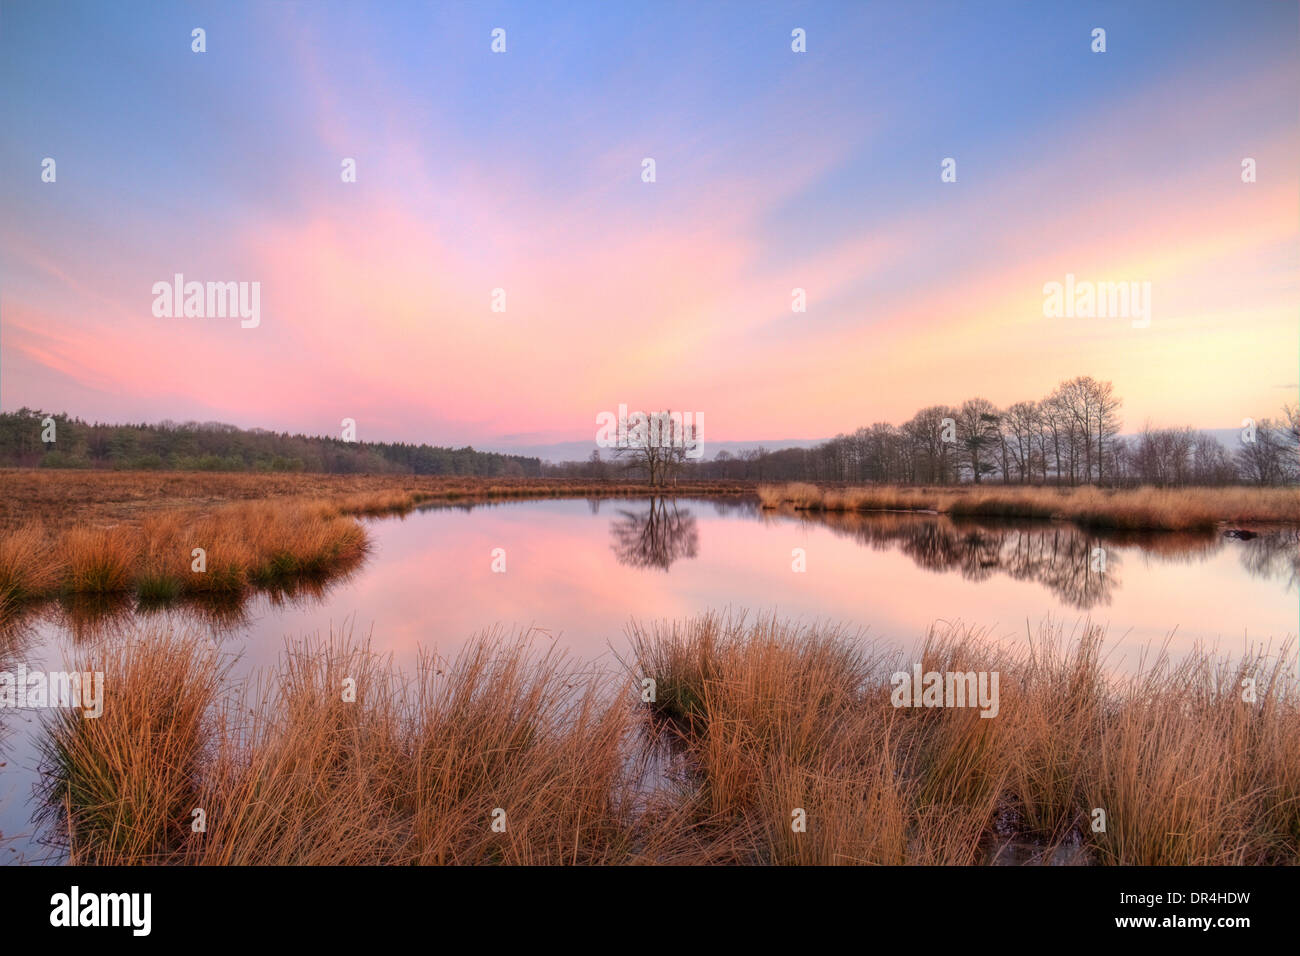 Lac sur une lande au lever du soleil, sous un ciel mauve Banque D'Images